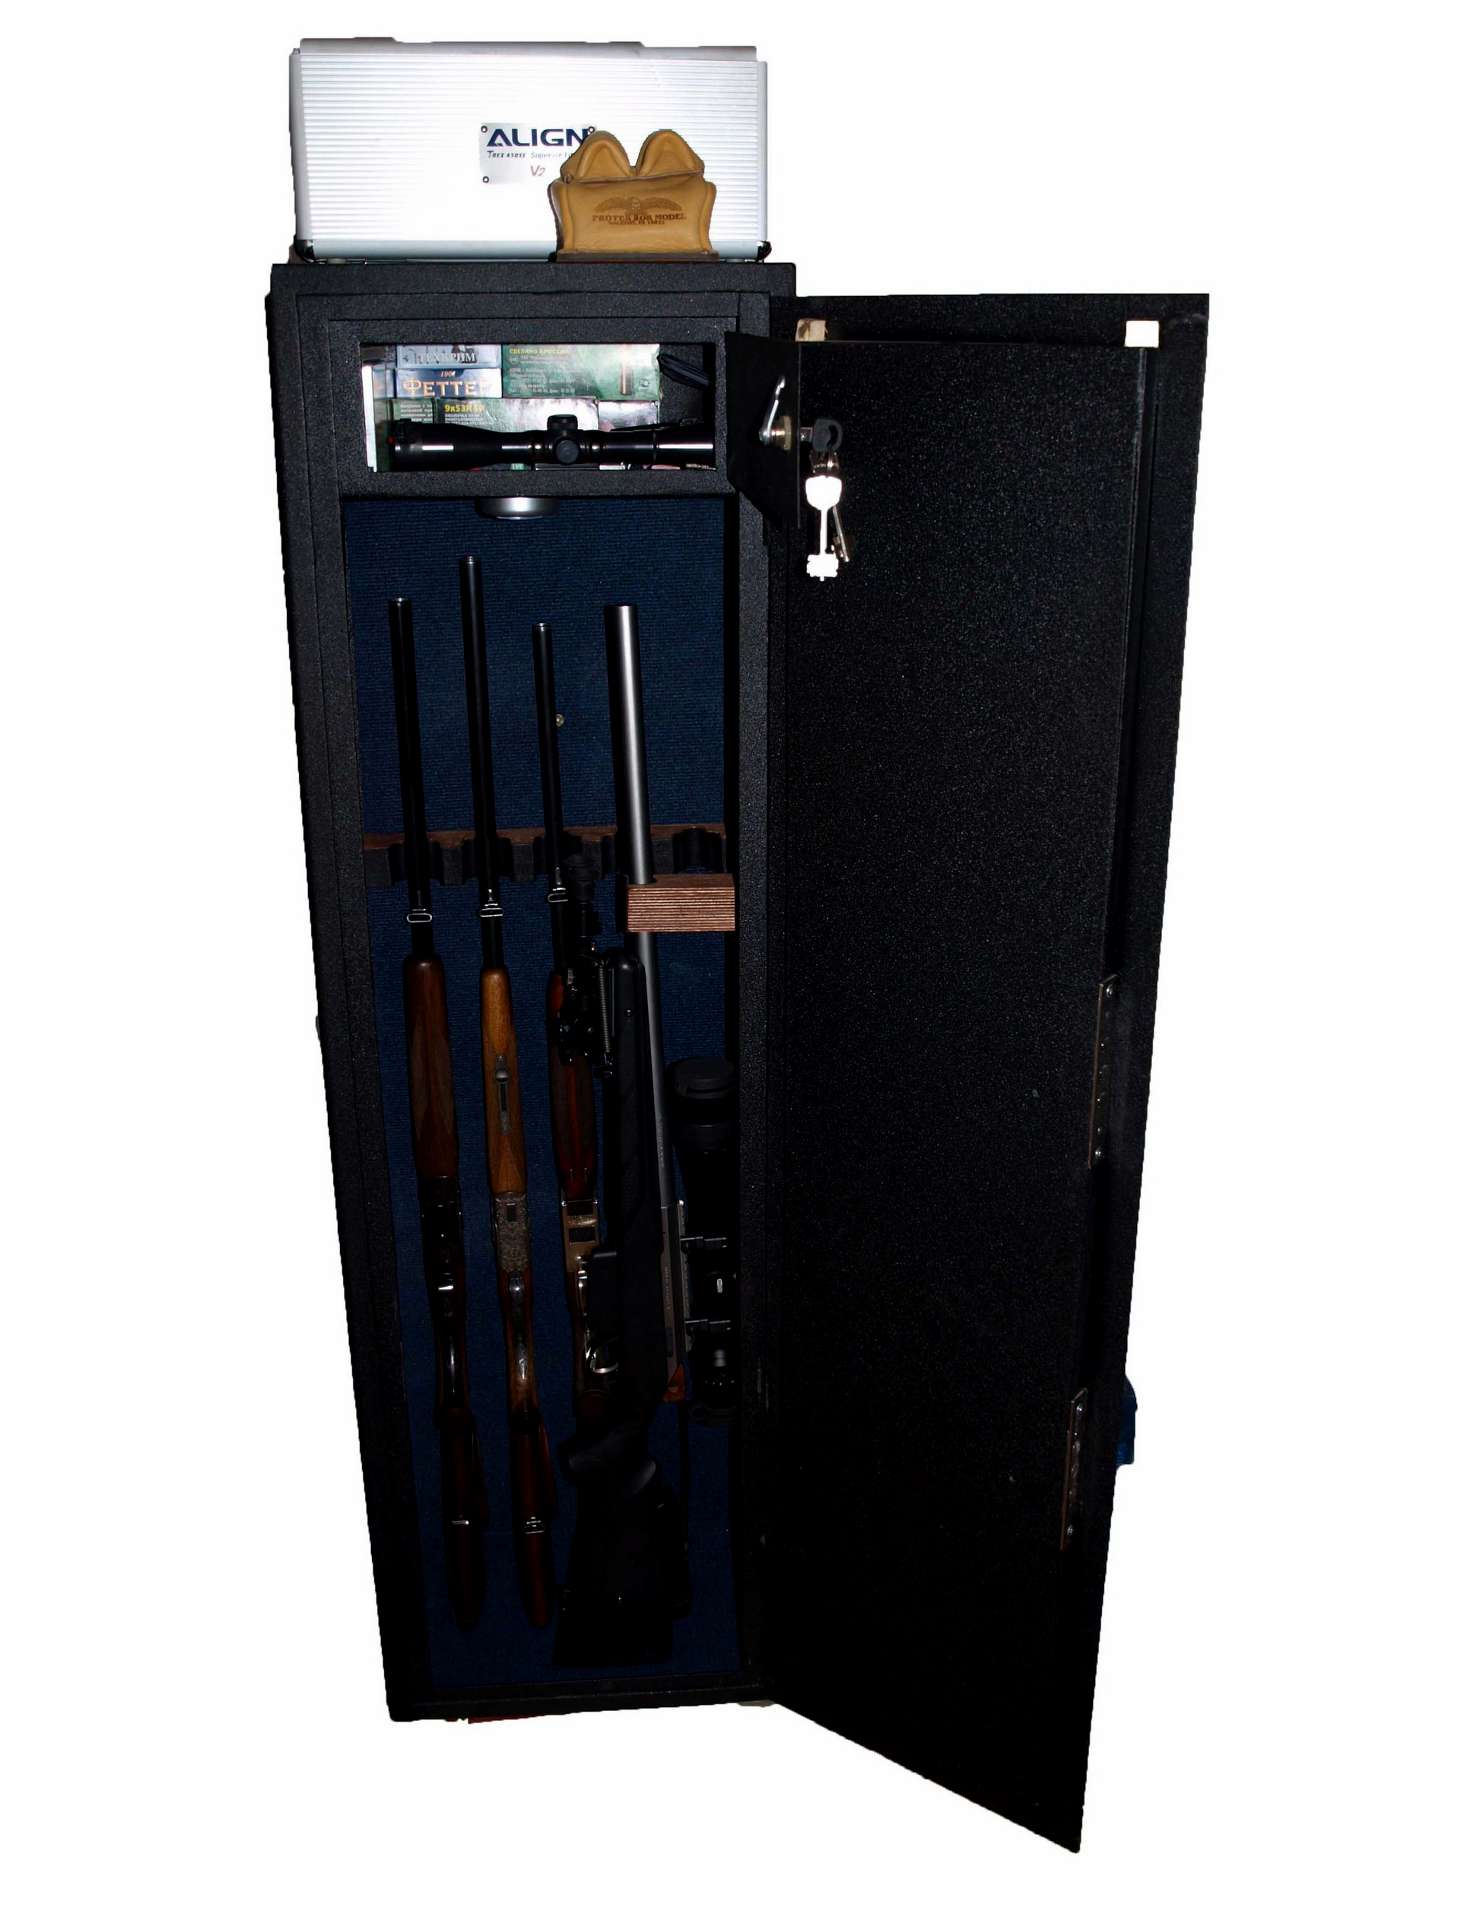 Оружейный сейф для хранения охотничьего, нарезного, гладкоствольного и травматического оружия, установка в доме и в квартире, требования к размерам и толщине